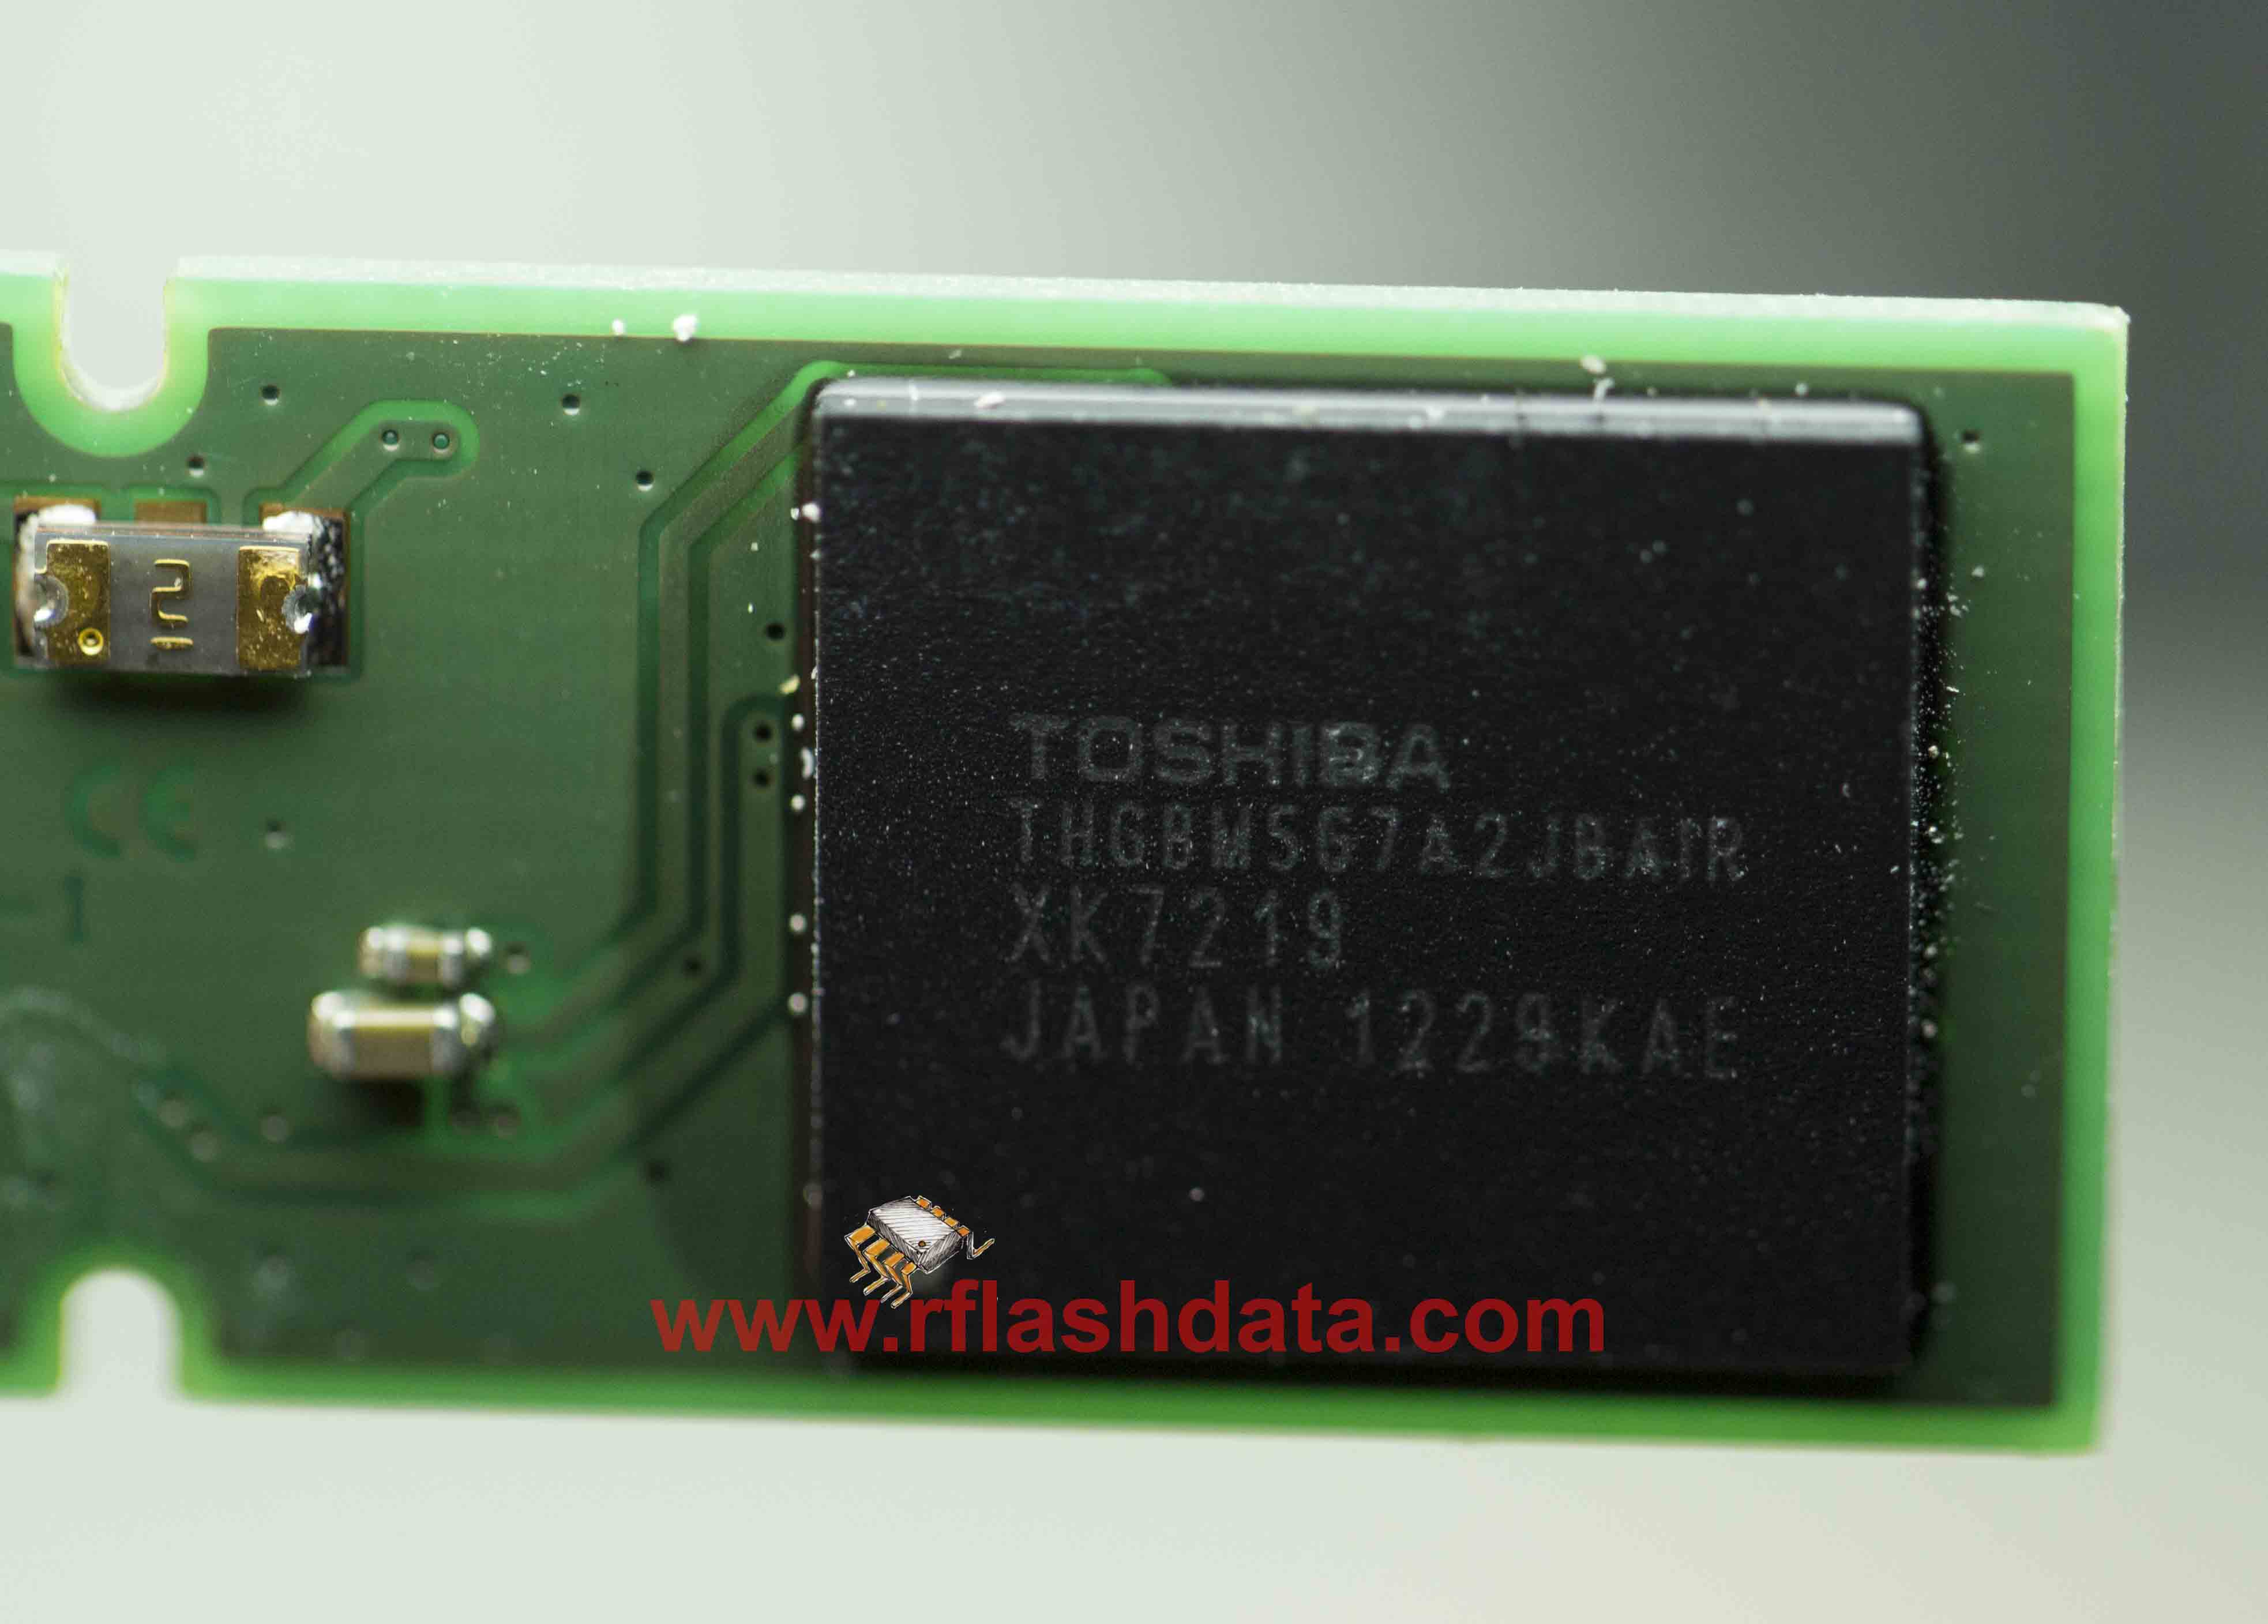 Toshiba THGBM5G7A2JBAIR